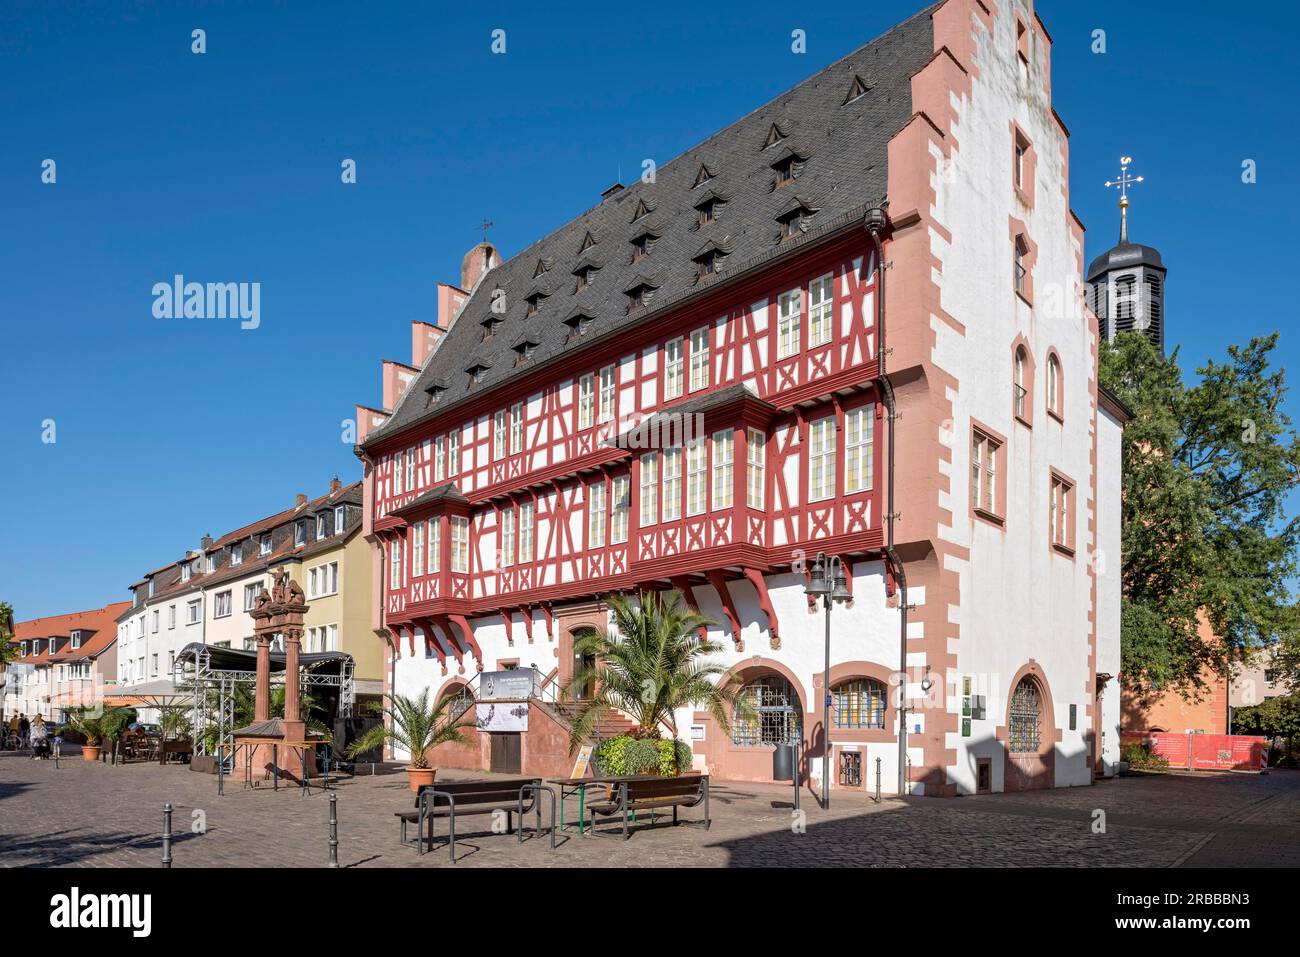 German Goldsmith's House, ancien hôtel de ville historique, maison à colombages, marché de la vieille ville, vieille ville, Hanau, Hesse, Allemagne Banque D'Images